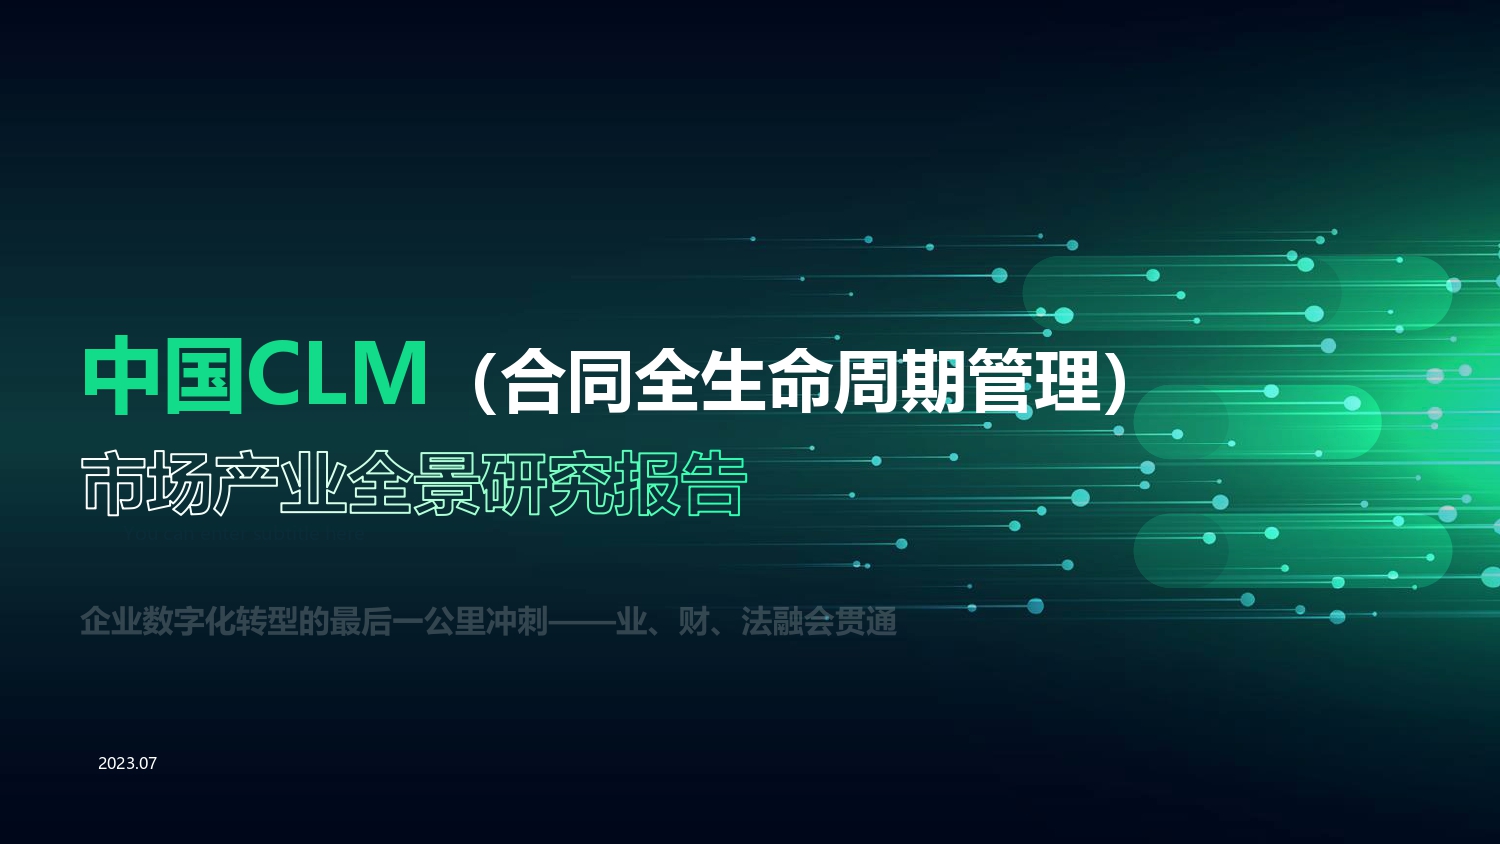 中国CLM产业研究报告FNL(1)_page-0001.jpg